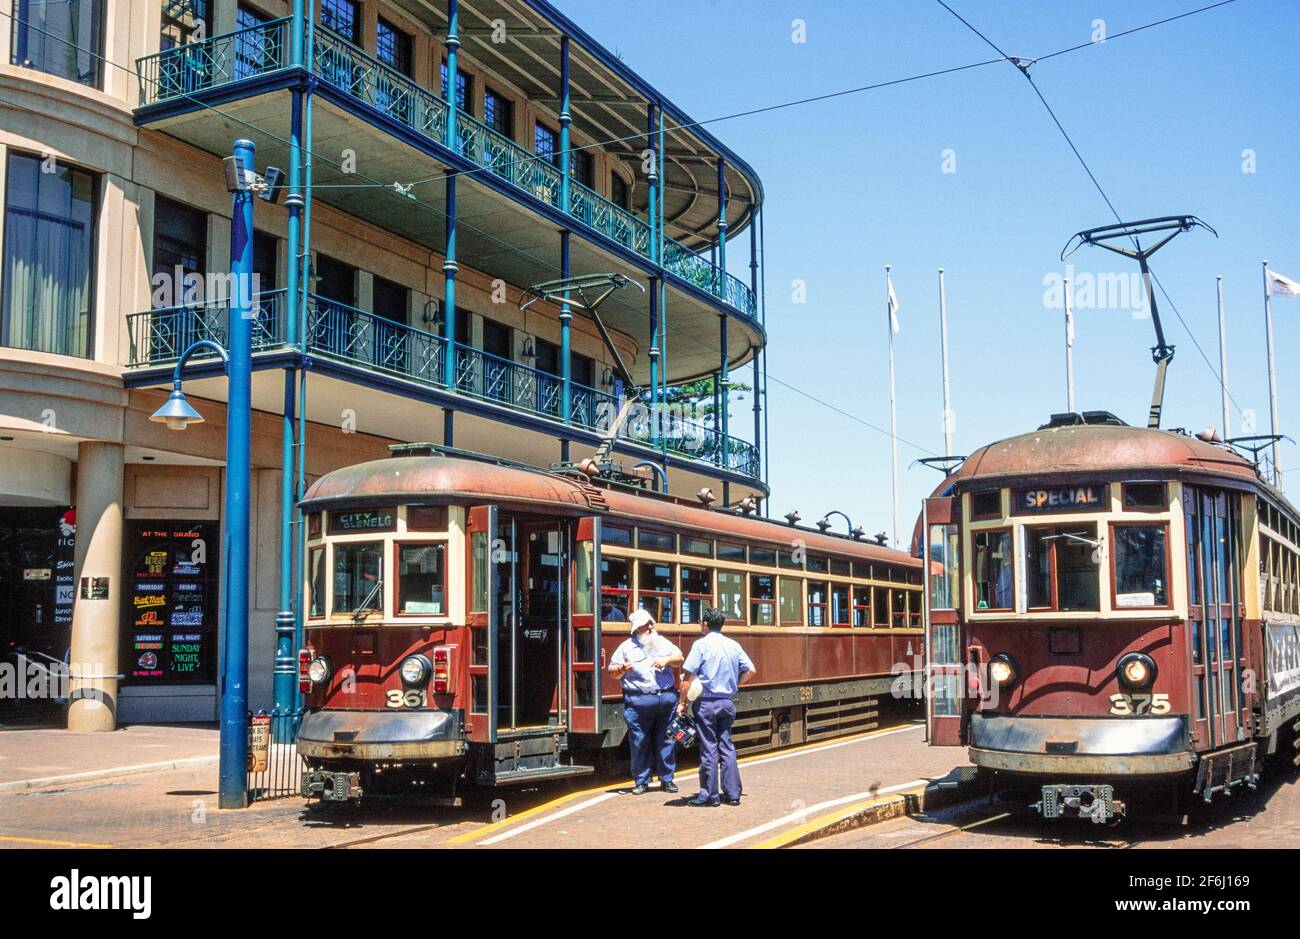 2001 Glenelg Adélaïde Australie méridionale - anciens tramways à l'arrêt de tramway Glenelg. Deux tramways de type H attendent le terminus de Moseley Square avant la reconfiguration de l'arrêt. Le tramway d'Adélaïde de type H était une classe de 30 tramways construits par UN Pengelly & Co, Adélaïde en 1929 pour être utilisés sur la ligne de tramway Glenelg. Ils ont exploité le service jusqu'à son remplacement par Bombardier FLEXITY Classics en 2006. La ligne de tramway Glenelg est une ligne de tramway/train léger à Adélaïde. Moseley Square est une place publique de la ville de Holdfast Bay à Glenelg et c'est le terminus de la ligne de tramway Glenelg Banque D'Images